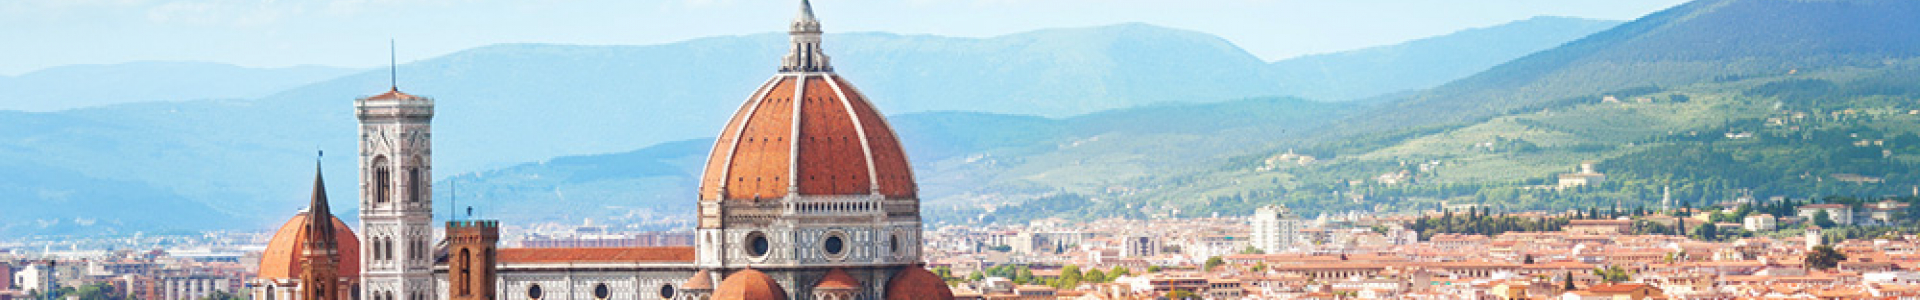 Voyage Privé : ventes flash, week-ends 3j/2n en hôtels 4* en à Florence, Rome... - 77%